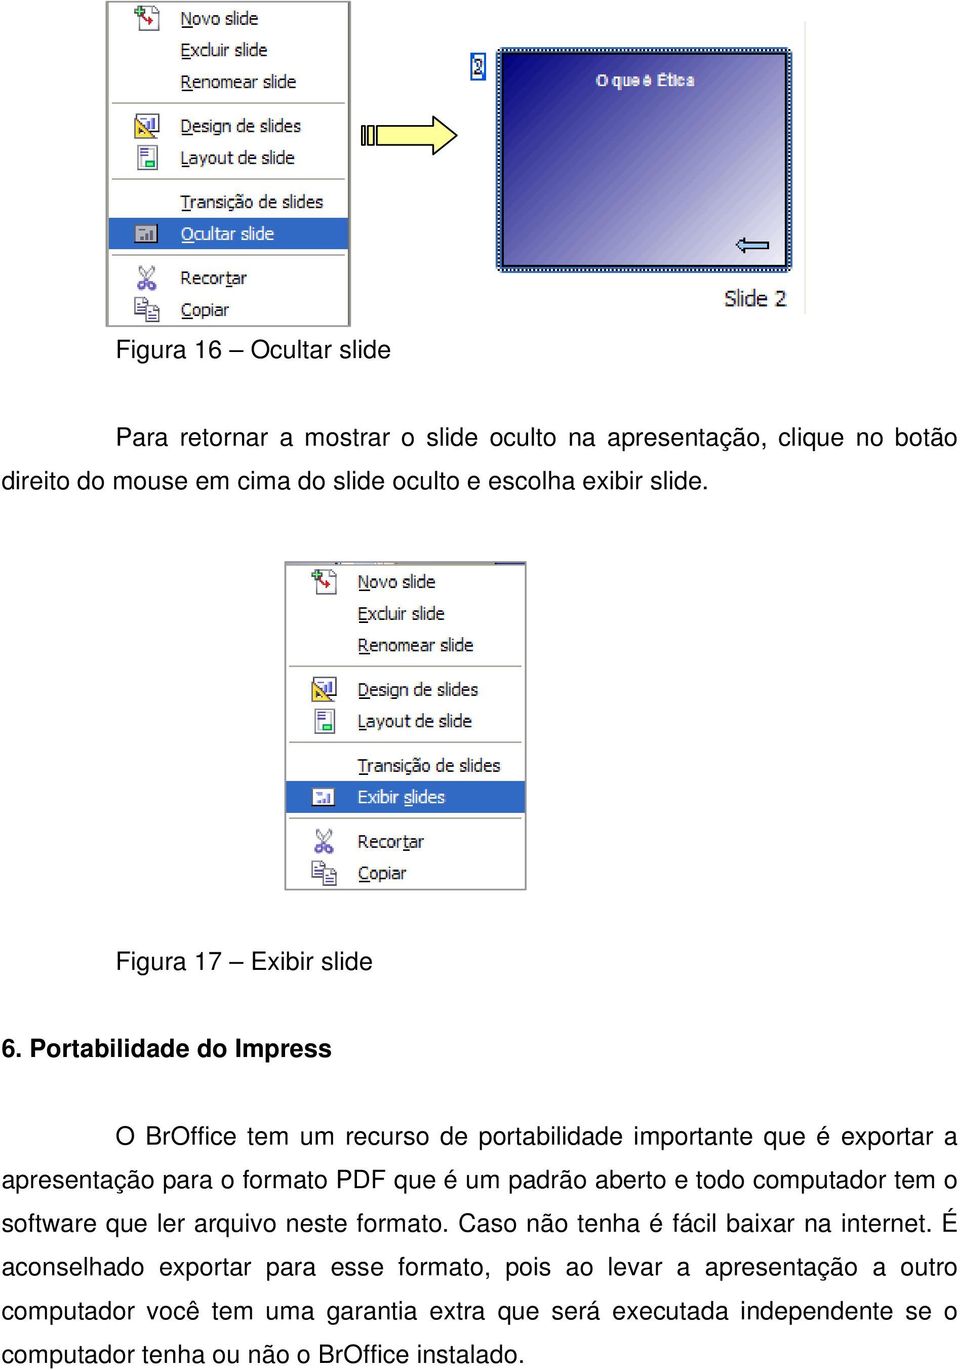 Portabilidade do Impress O BrOffice tem um recurso de portabilidade importante que é exportar a apresentação para o formato PDF que é um padrão aberto e todo